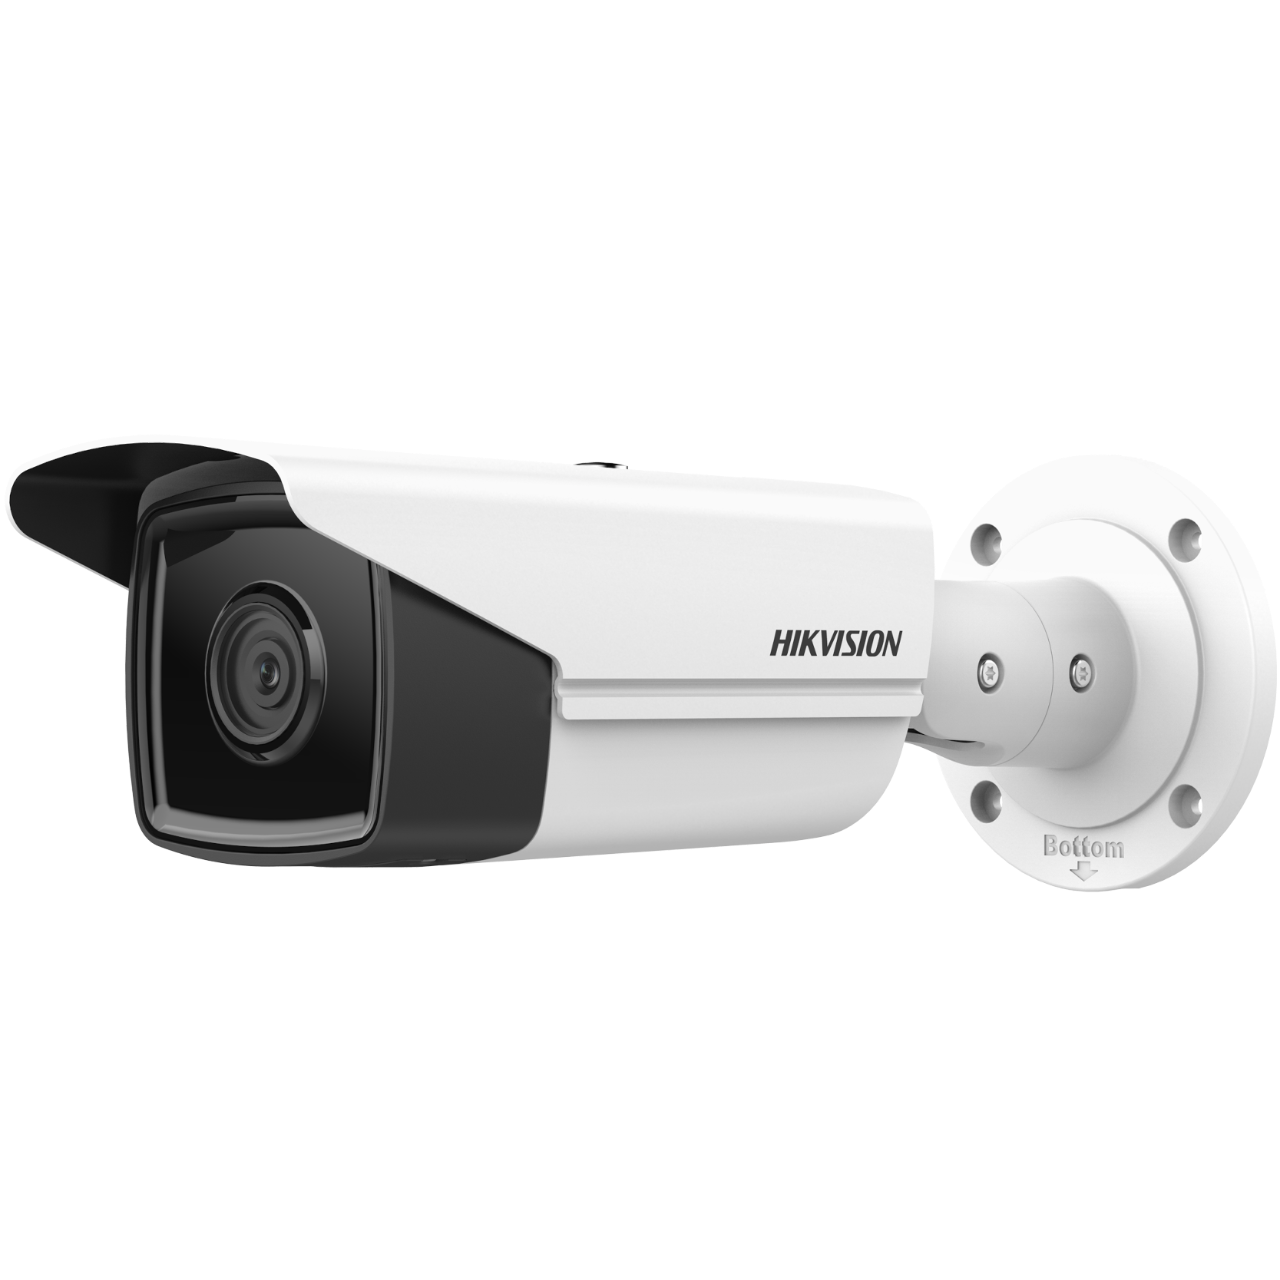 6 IR Auflösung Video: Megapixel 6MP Hikvision IP DS-2CD2T63G2-4I(4mm) AcuSense Bullet Fixed Netzwerkkamera Kamera, Reichweite, HIKVISION 80m